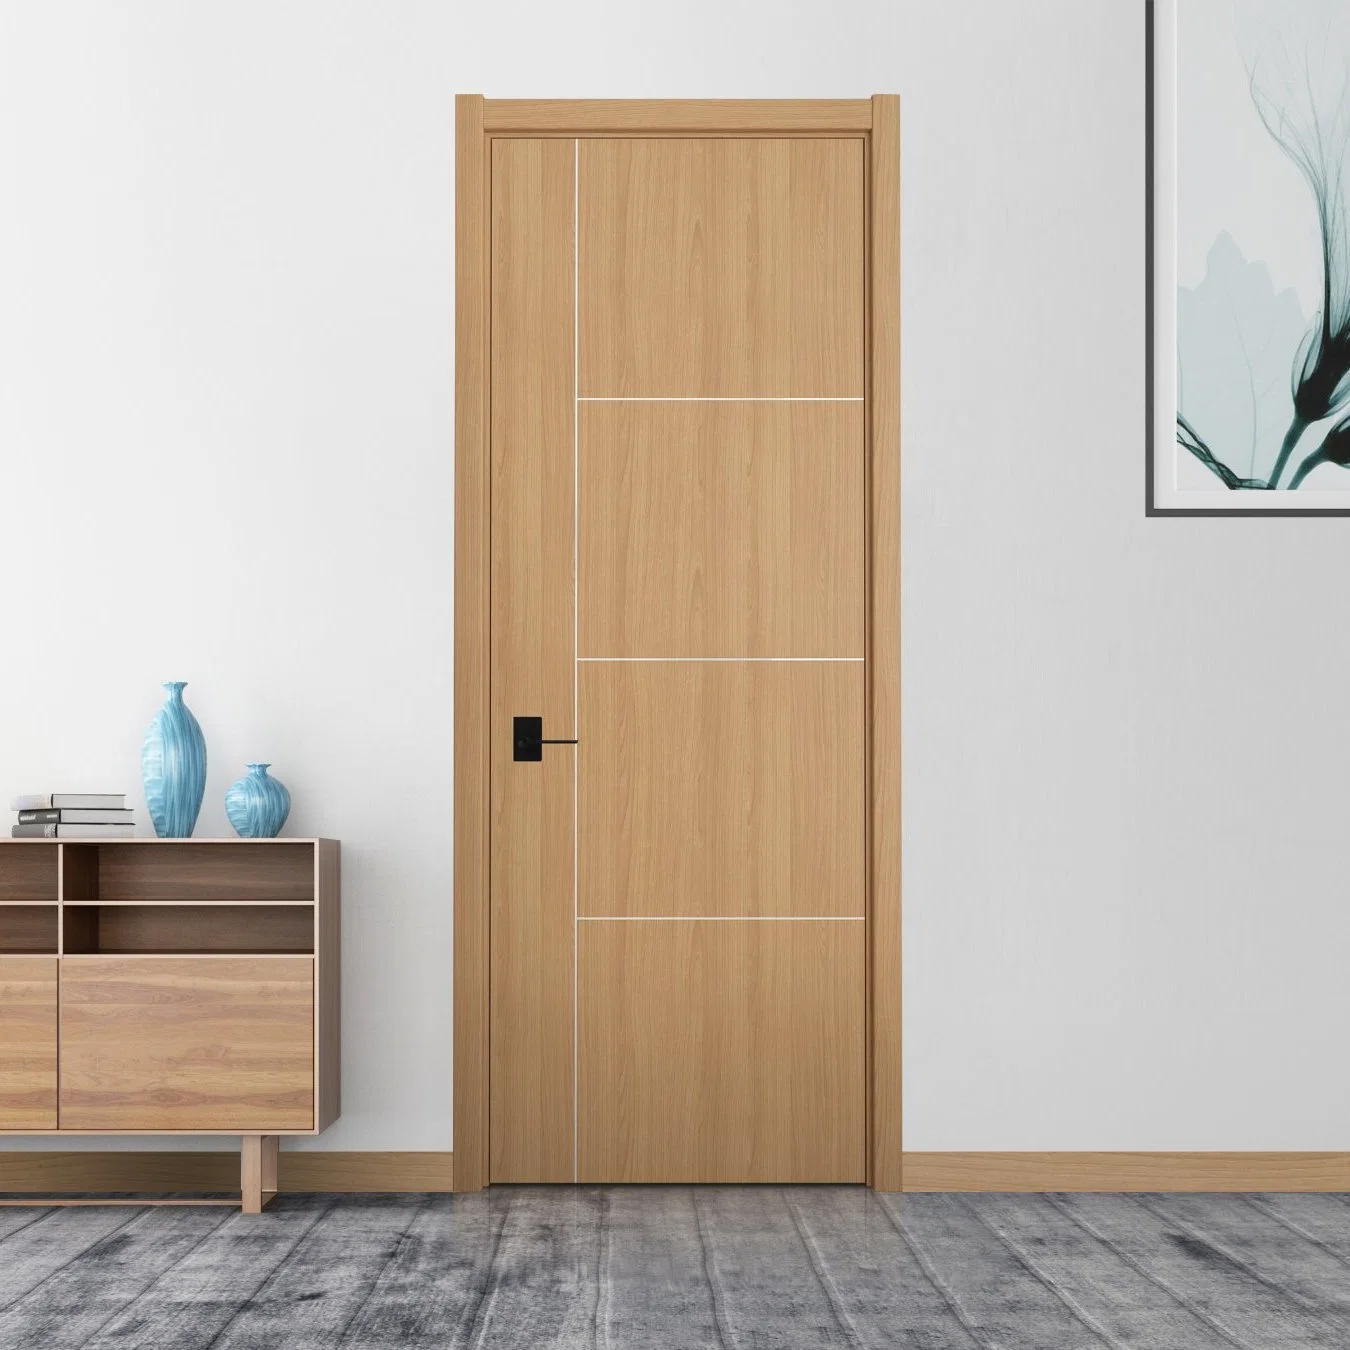 New Interior Glass Solid Wood PVC Door